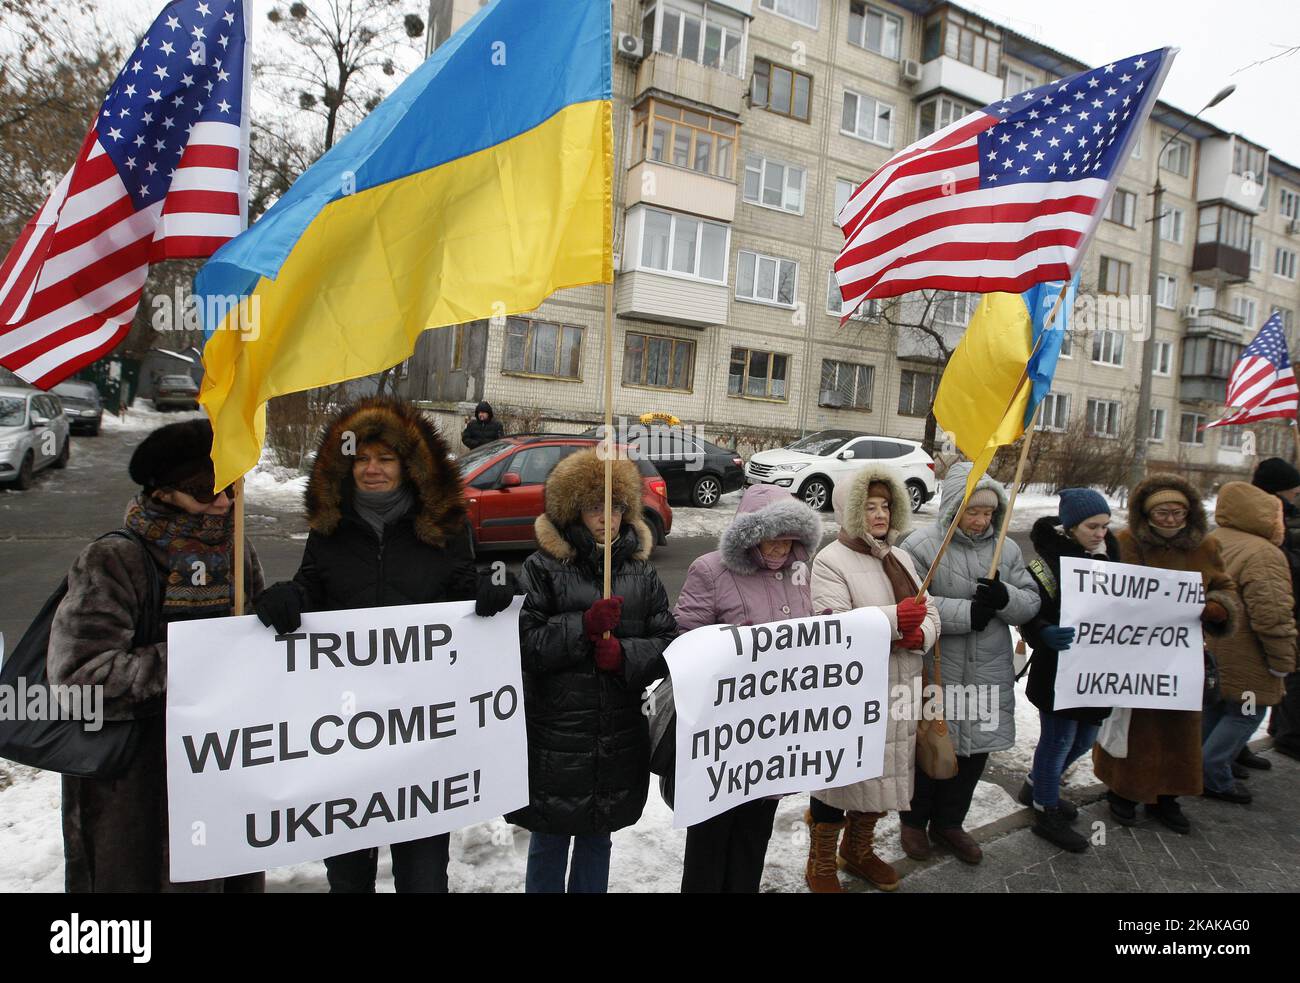 Aktivisten halten US- und ukrainische Flaggen und Plakate mit der Aufschrift „Trump willkommen in der Ukraine!“, „Trump - der Frieden für die Ukraine!“, während einer Kundgebung vor der US-Botschaft in Kiew, Ukraine, am 20. Januar 2017. Einige ukrainische Aktivisten versammelten sich zur Kundgebung vor der US-Botschaft in Kiew, um den designierten US-Präsidenten Donald Trump mit seiner Amtseinführung zu begrüßen und Auf Wiedersehen dem scheidenden US-Präsidenten Barack Obama zu sagen. (Foto von STR/NurPhoto) *** Bitte nutzen Sie die Gutschrift aus dem Kreditfeld *** Stockfoto